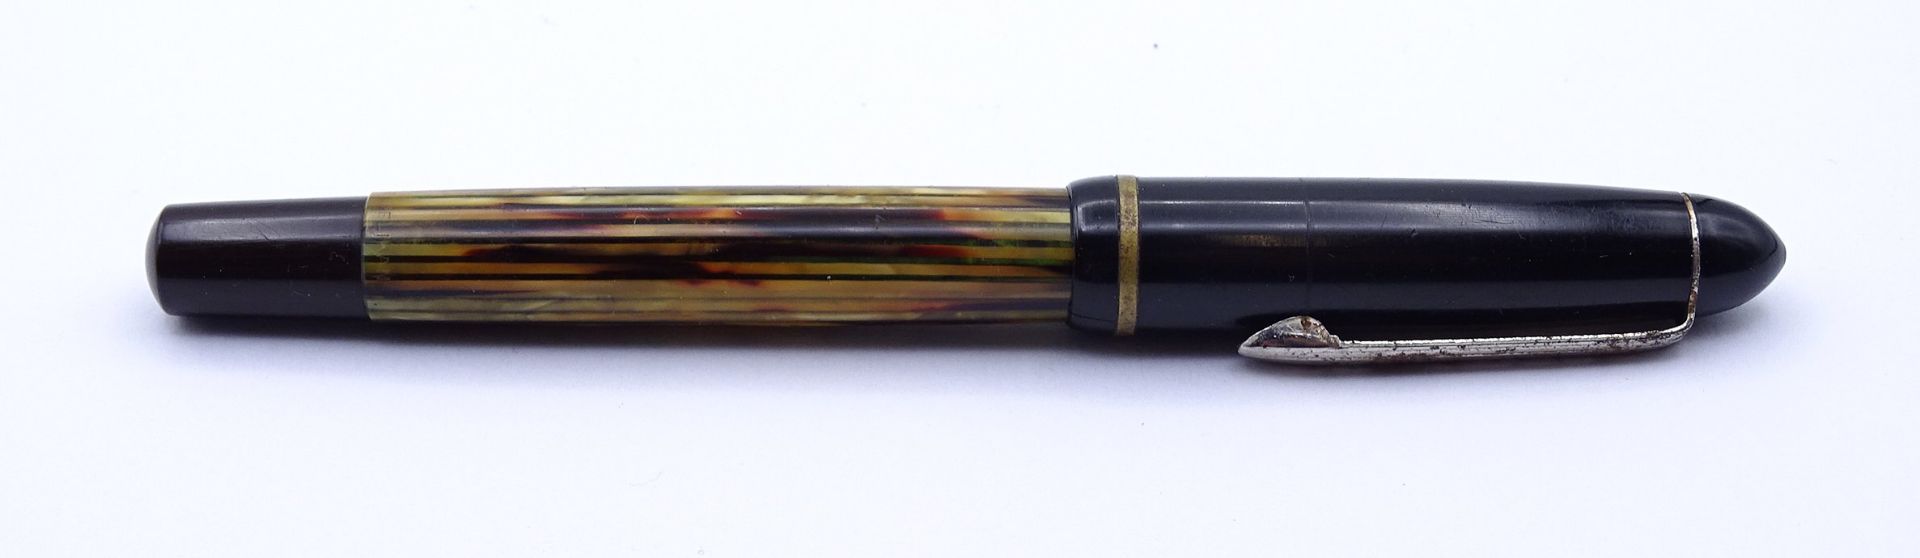 Pelikan Füller, GG Feder 585/000 Stärke F, Gebrauchsspuren, Deckel wohl nicht passend - Bild 4 aus 5